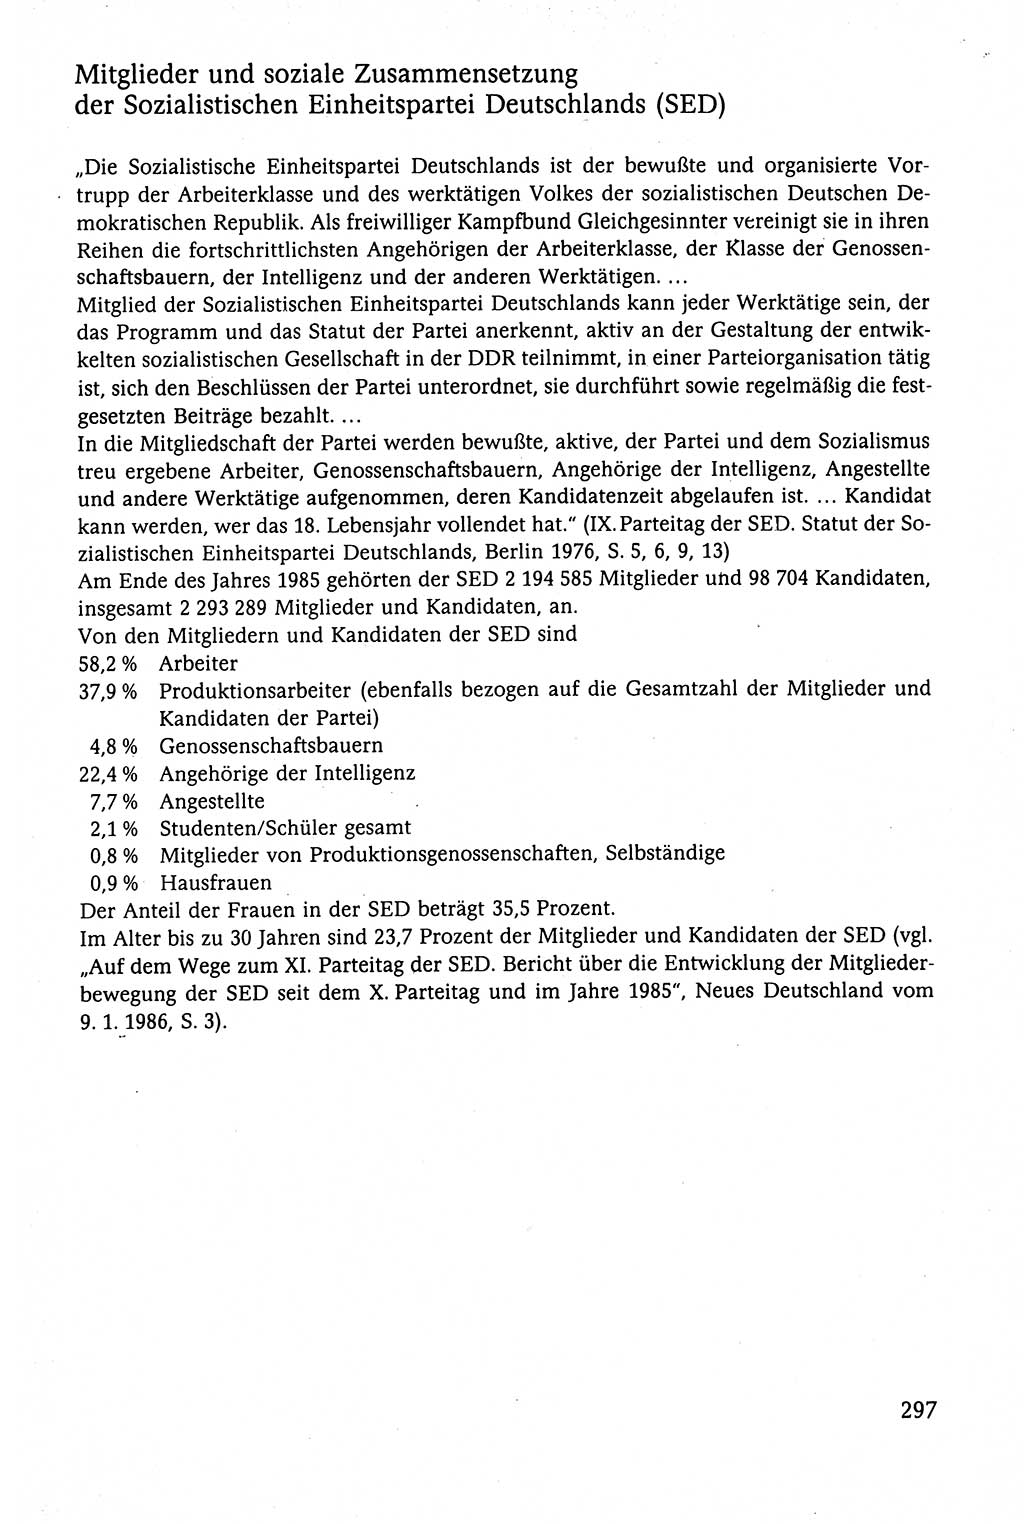 Der Staat im politischen System der DDR (Deutsche Demokratische Republik) 1986, Seite 297 (St. pol. Sys. DDR 1986, S. 297)